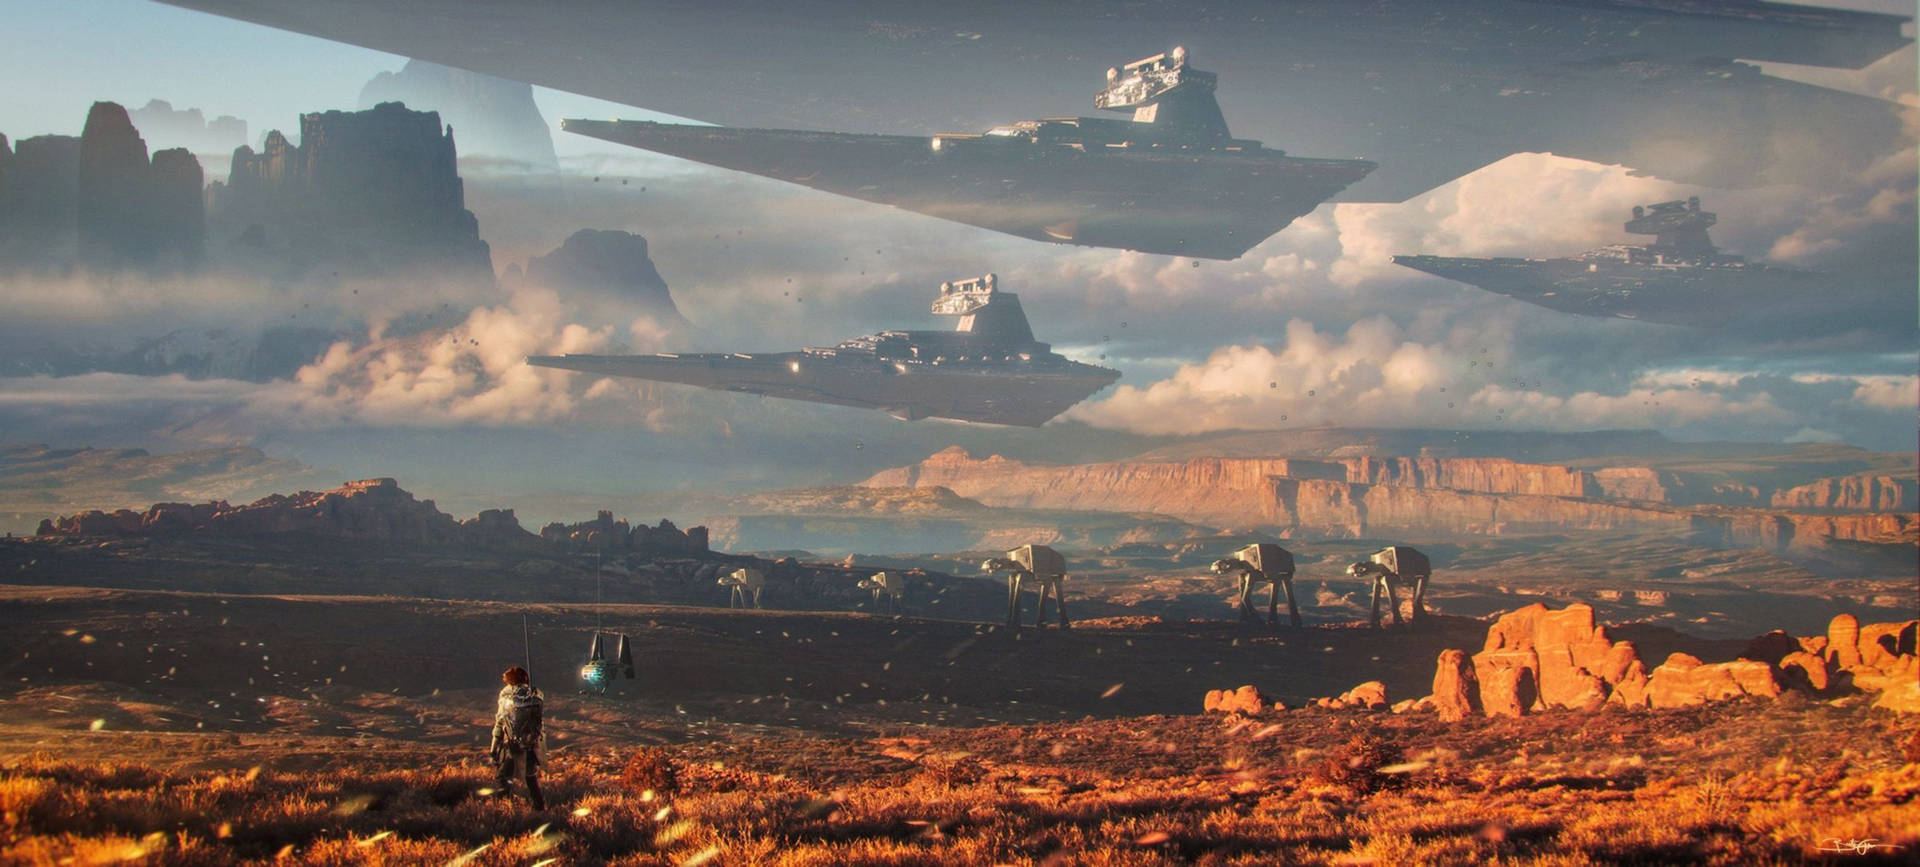 Star Wars Space Landscape Wallpaper